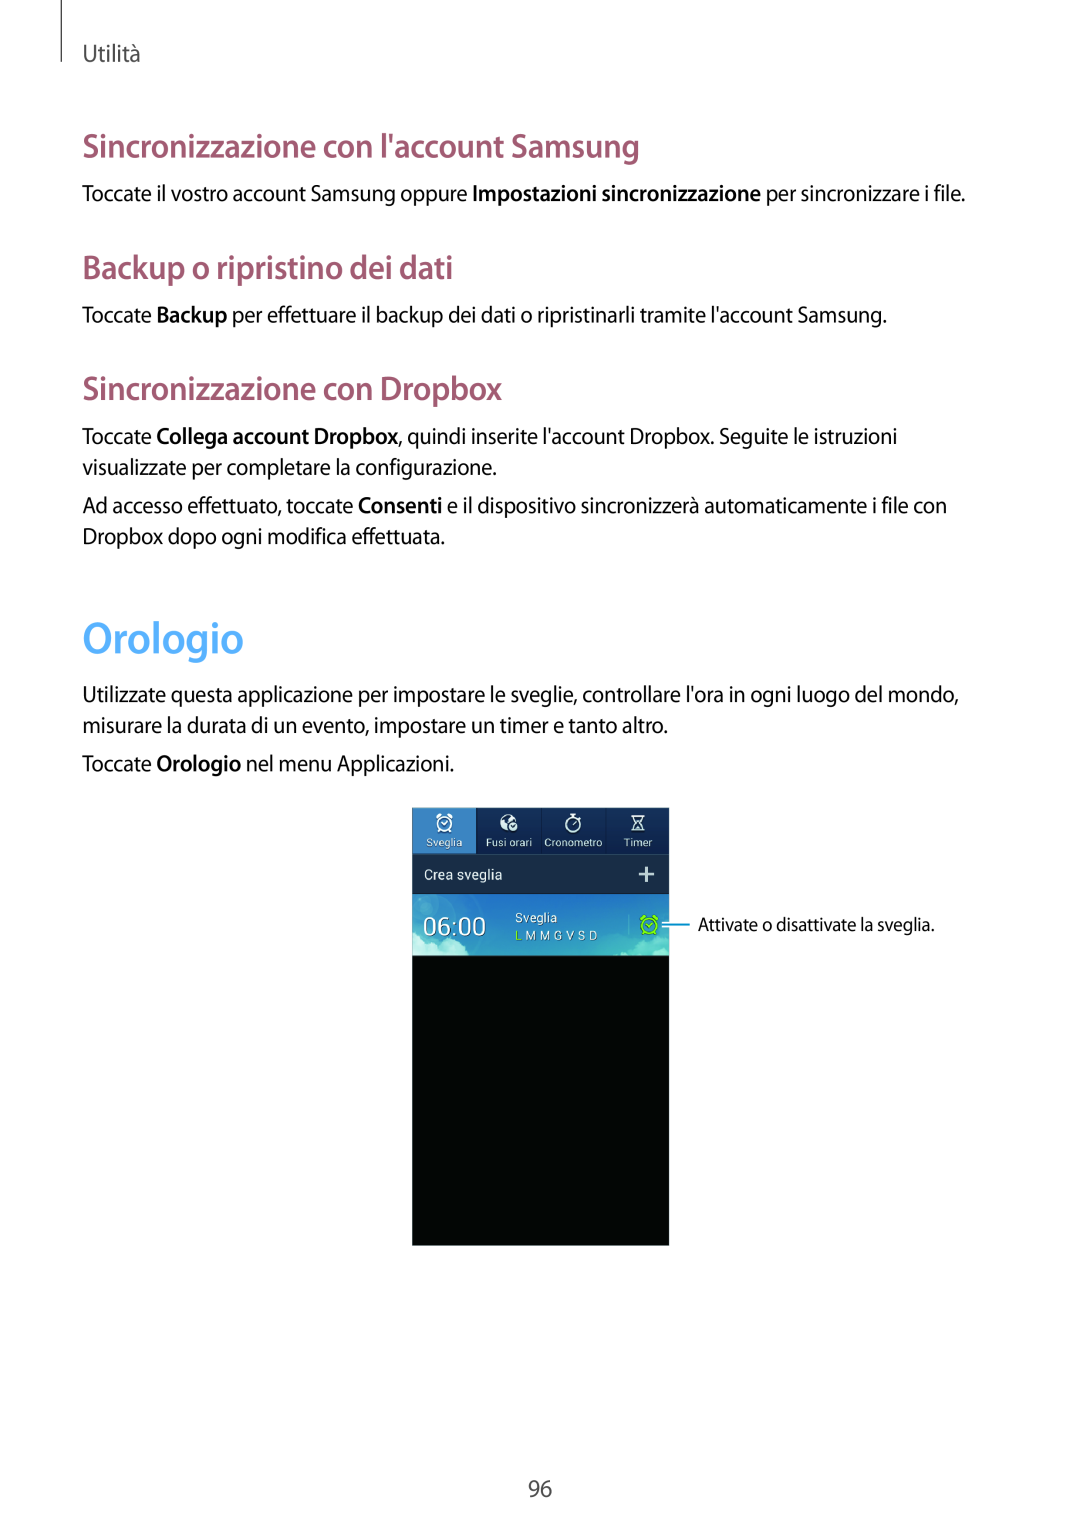 Samsung GT-I9195ZBAITV manual Orologio, Sincronizzazione con laccount Samsung, Backup o ripristino dei dati, Utilità 